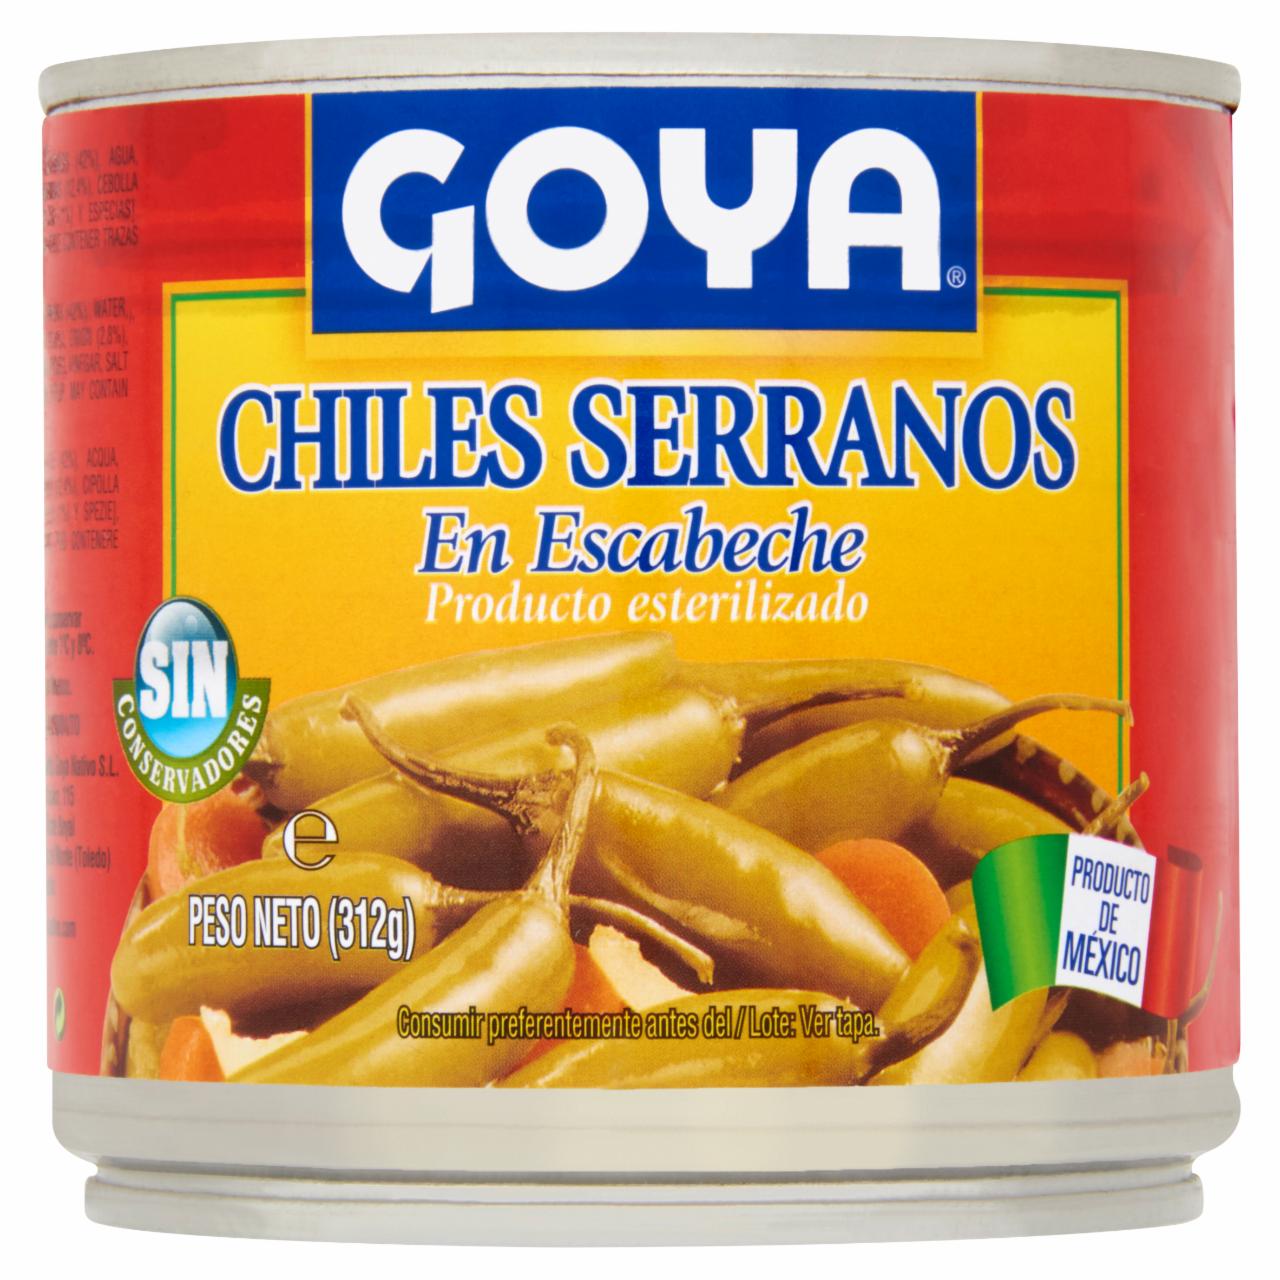 Képek - Goya serrano chili paprika páclében 312 g